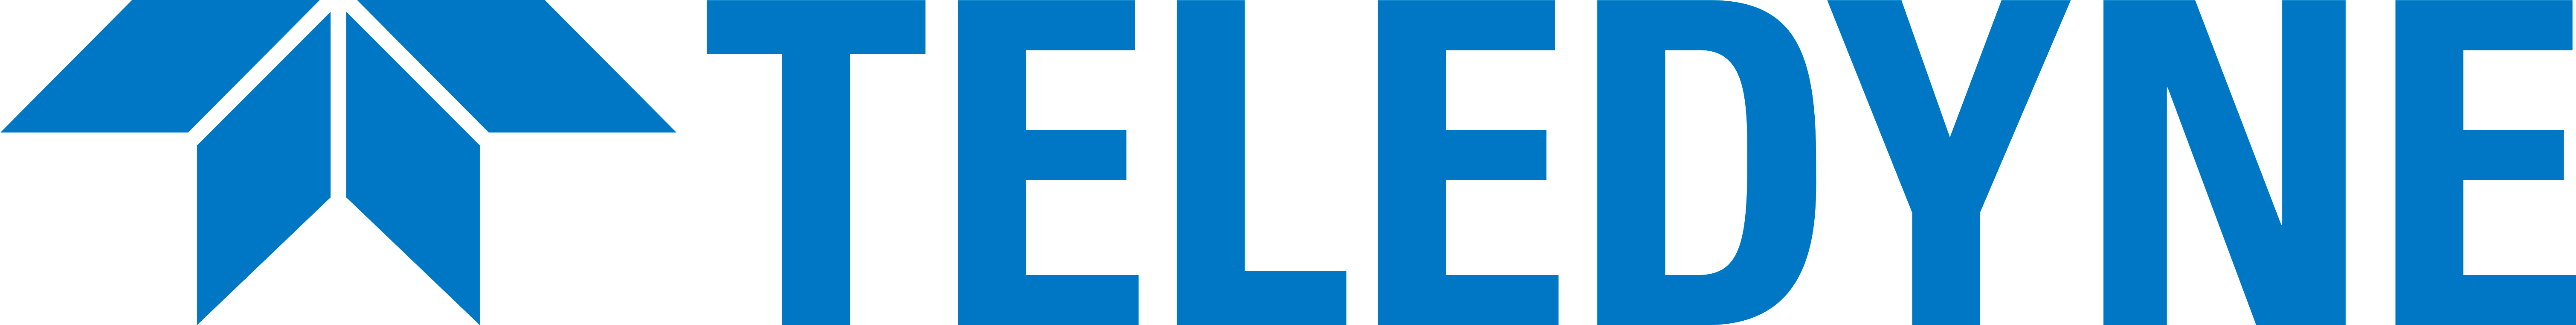 Teledyne Brown Engineering, Inc. logo